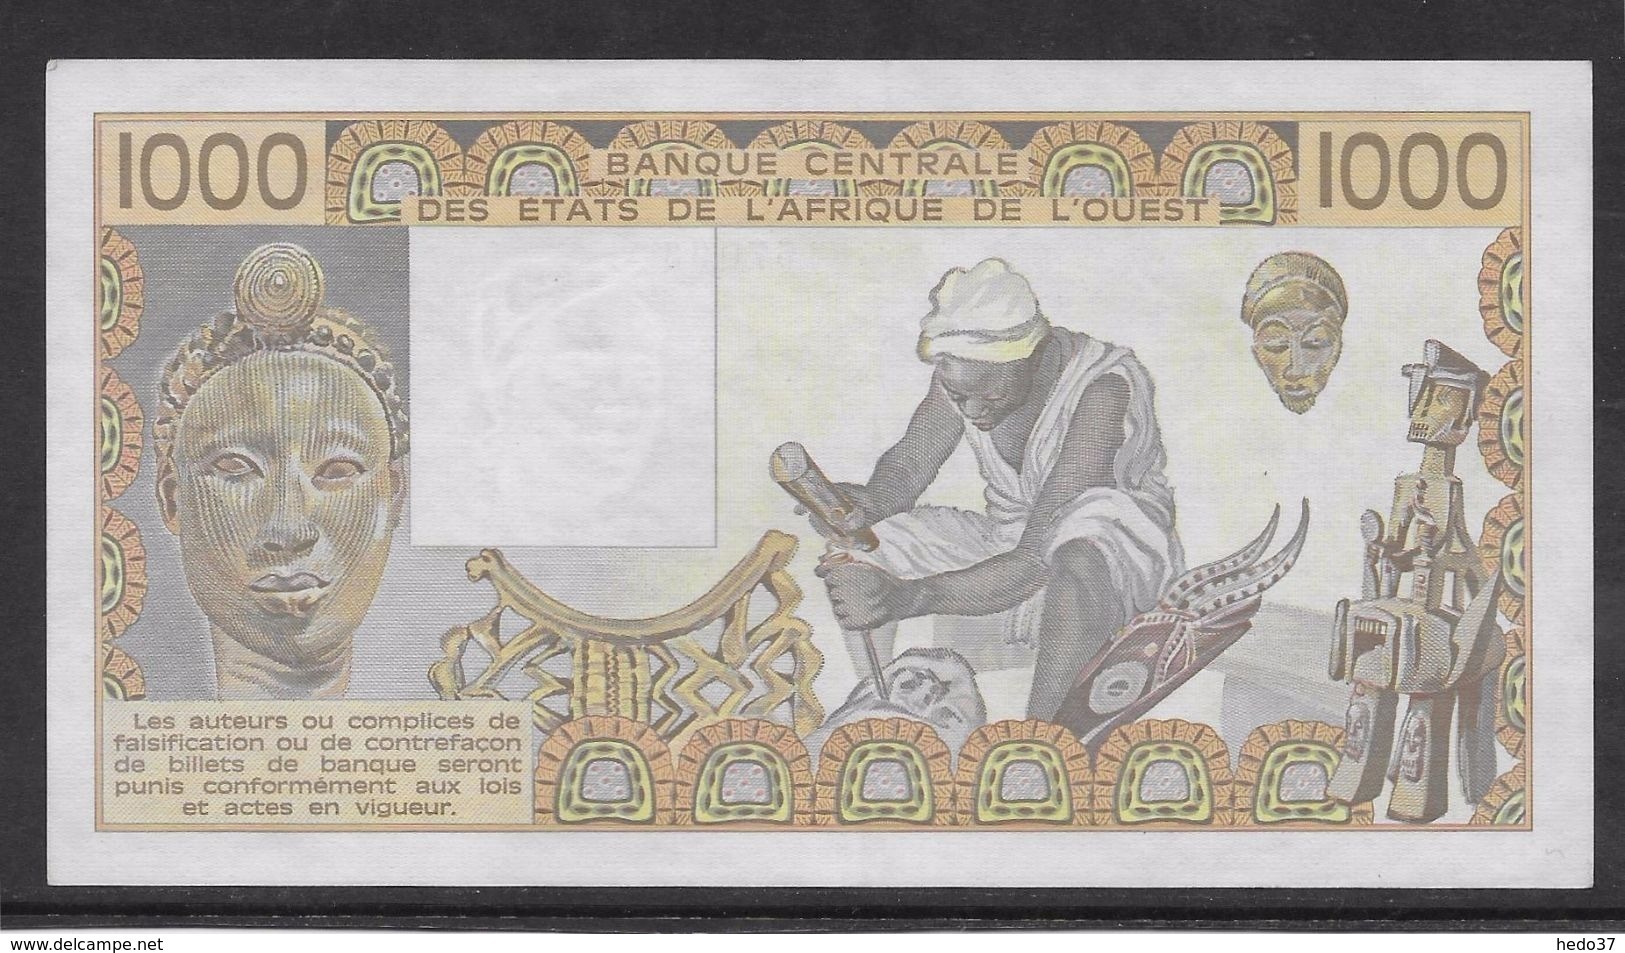 Côte D'Ivoire - 1000 Francs - 1990 -  Pick N°107Aj - Neuf - Côte D'Ivoire